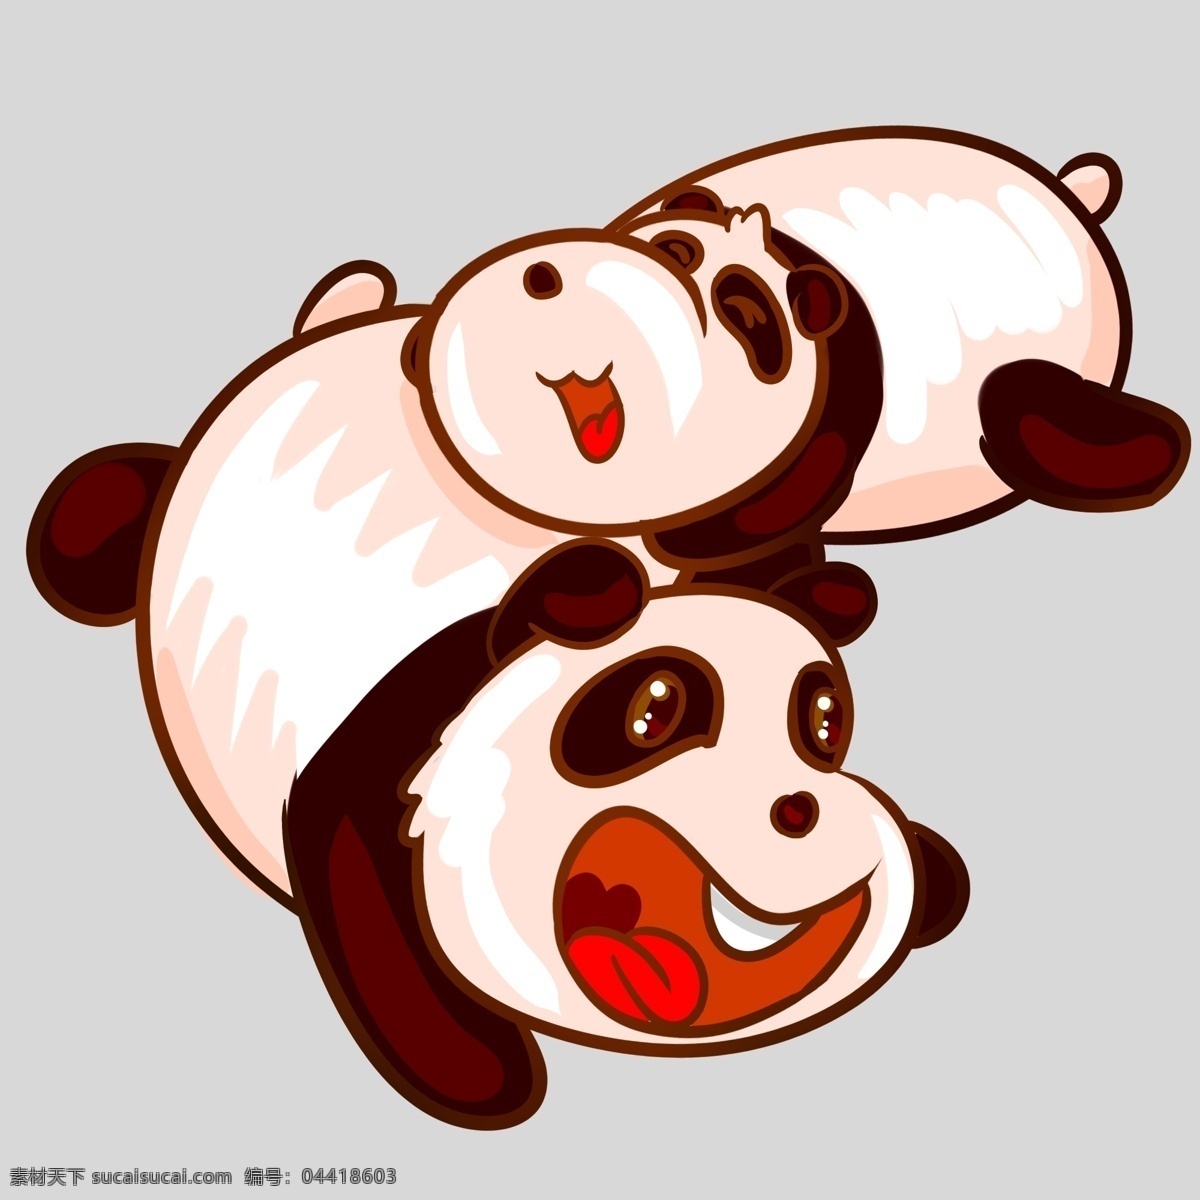 两 只 可爱 大熊猫 插图 国家保护动物 两只熊猫 可爱的熊猫 开心的熊猫 美丽的熊猫 听话的熊猫 熊猫插图